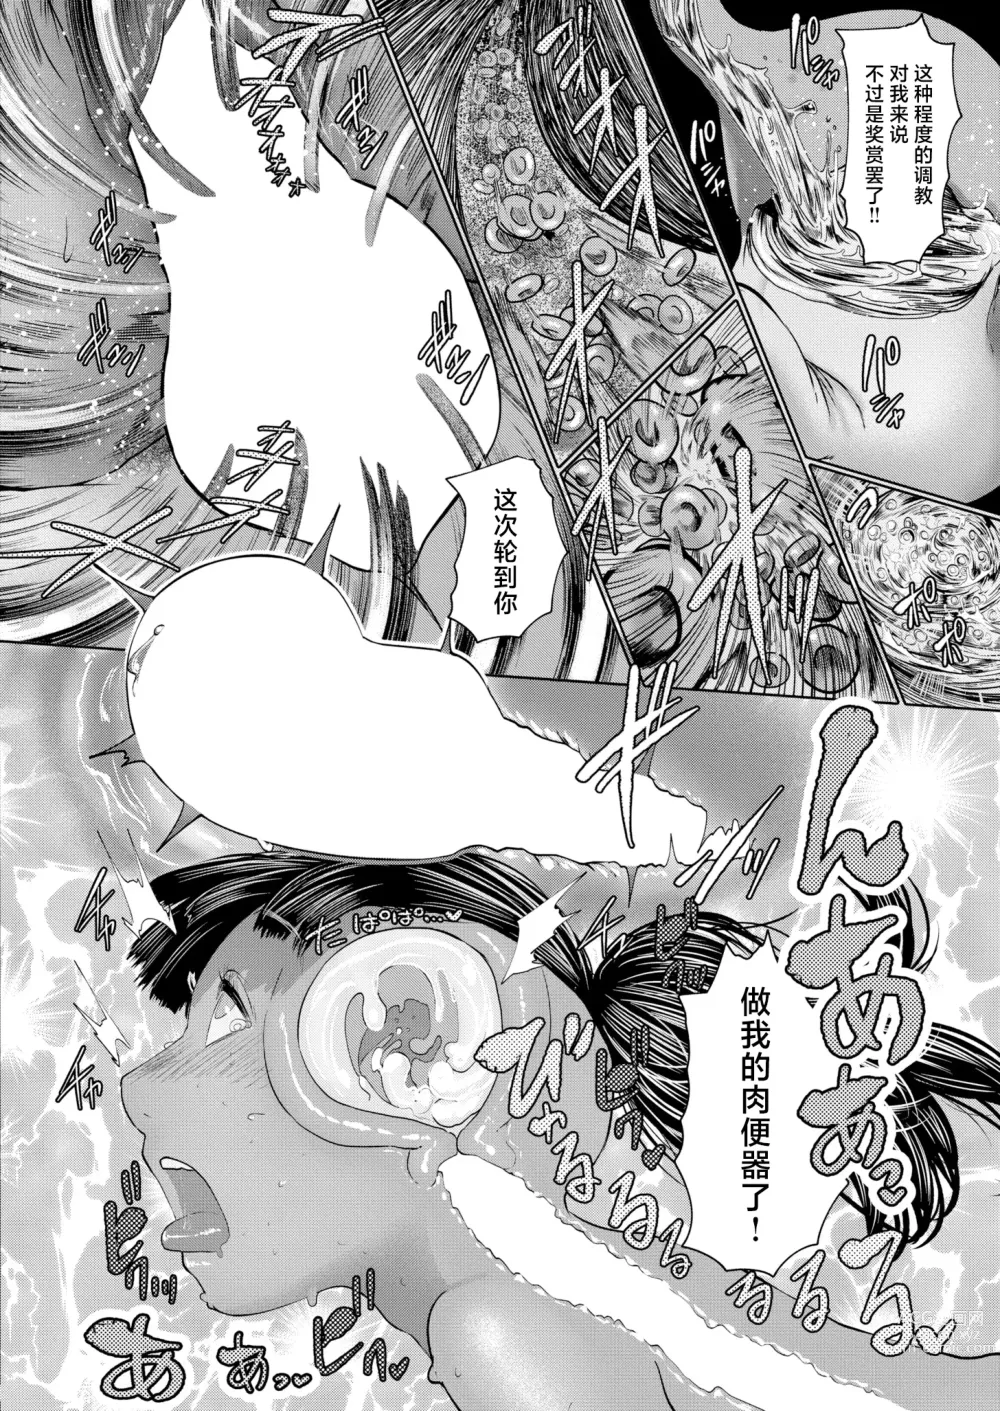 Page 134 of manga ねーうしとらうー! #1-5